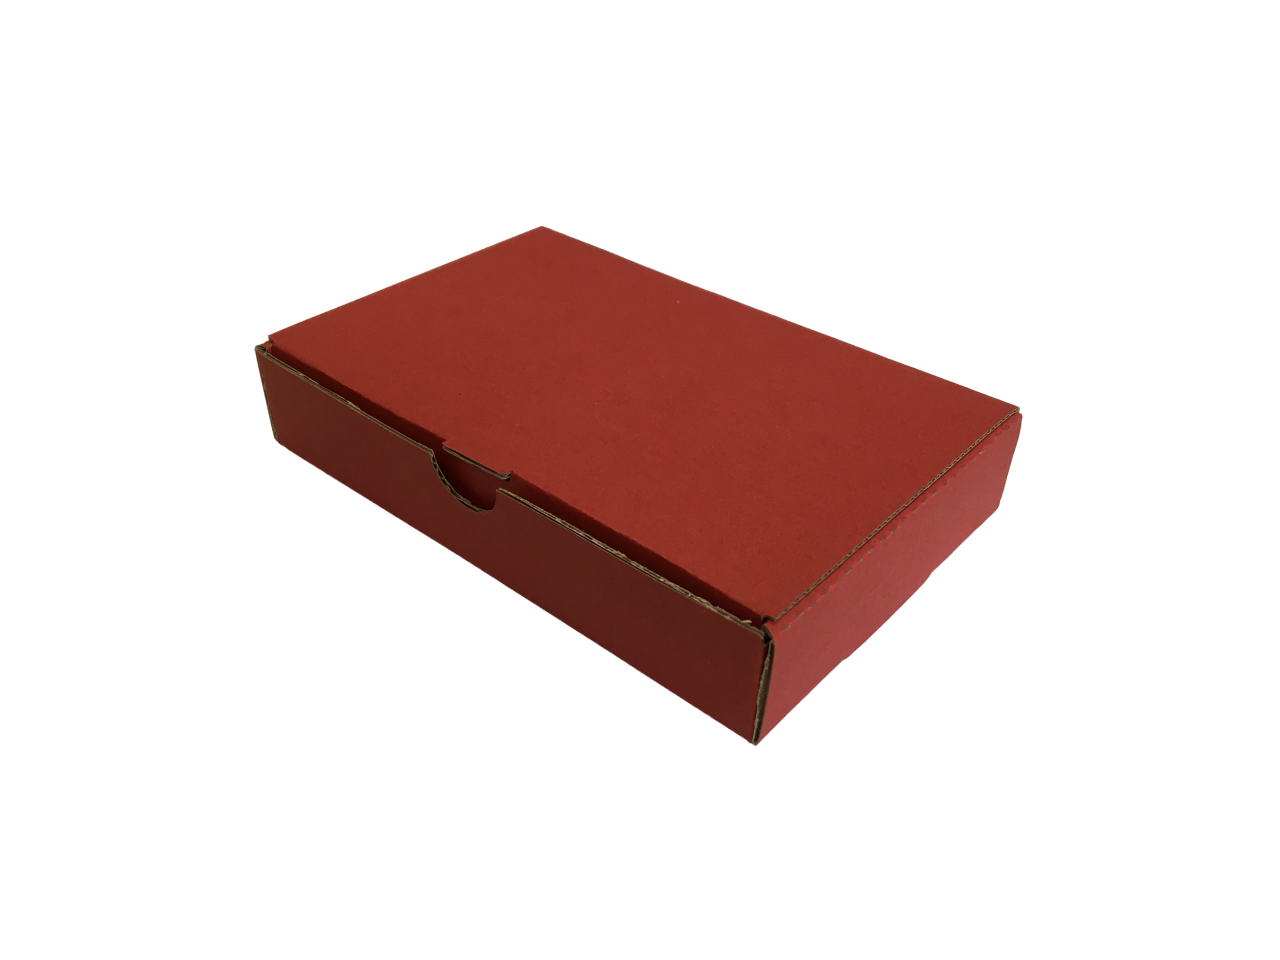 Színes kis méretű önzáró tároló doboz (145x95x28 mm) Színes kis méretű, önzáródó hullámkarton tároló doboz felnyitható tetővel

Felhasználás: 
Kisméretű tárgyak tárolására alkalmas kisméretű színes önzáródó hullámkarton tároló doboz.

Méret: 145 x 95 x 28 mm - hullámkarton tároló doboz
Méret: Fefco 0421

Anyag: mikrohullám karton papír
Színek: bordó, fekete, kék, zöld